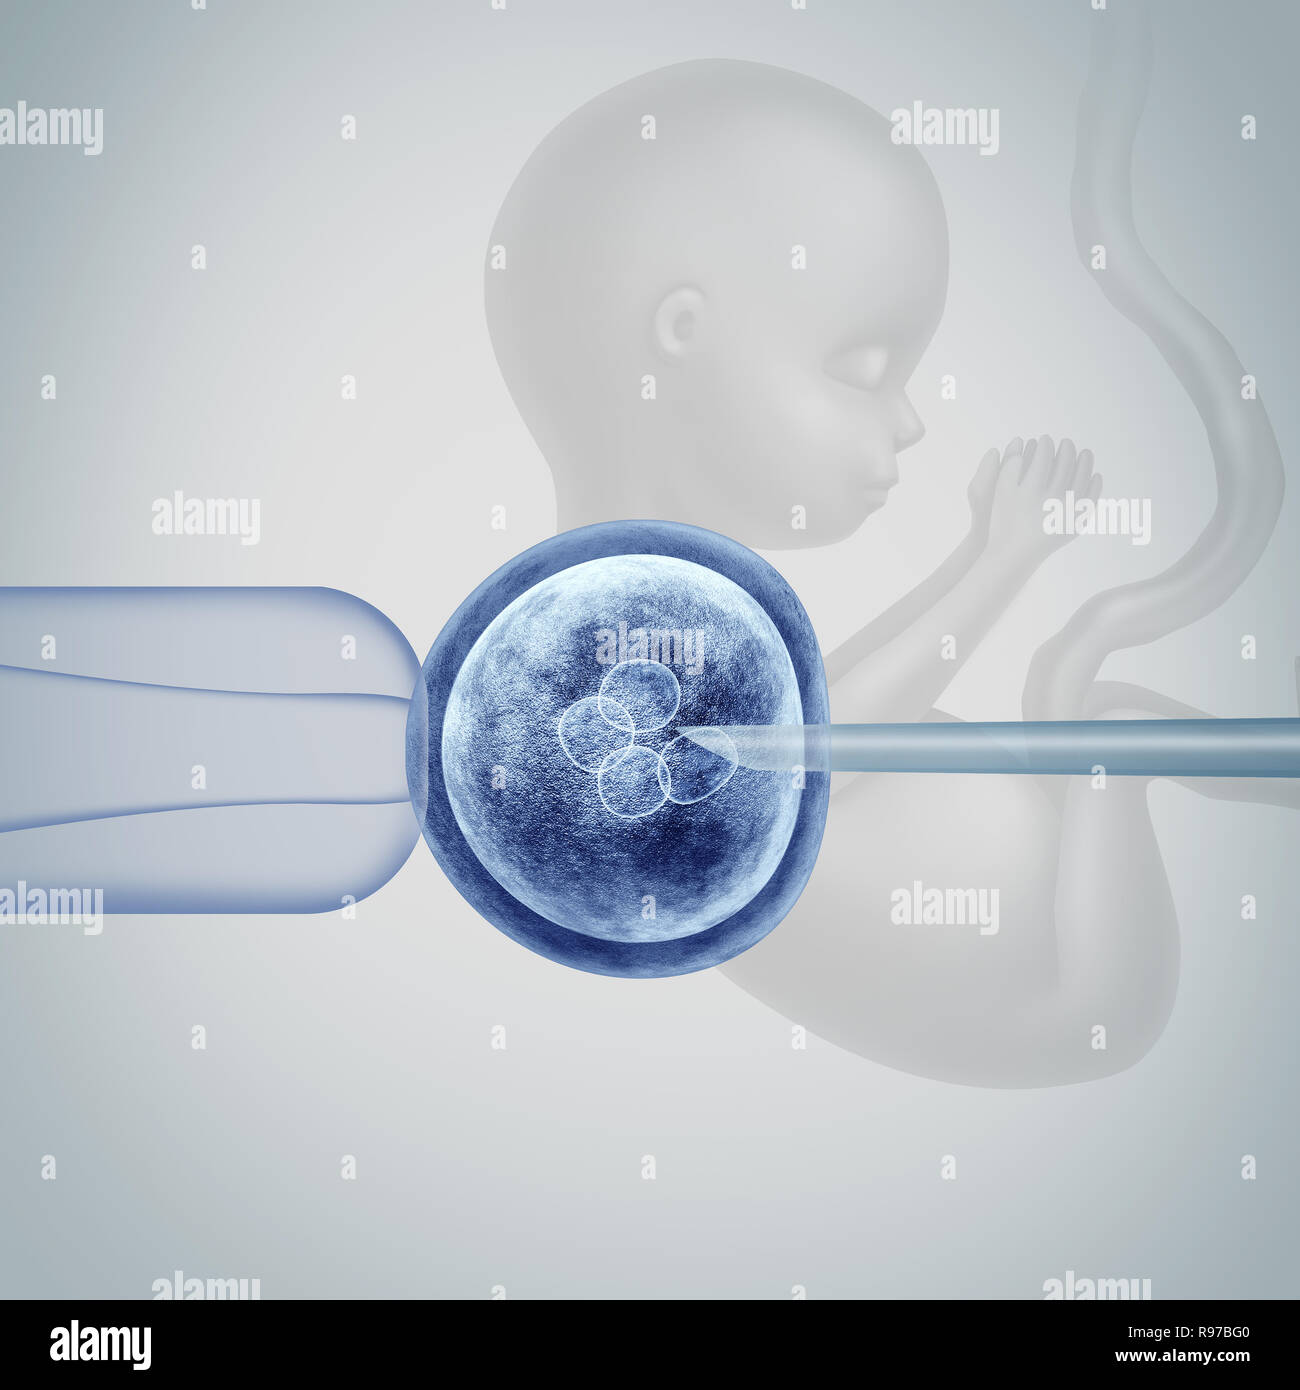 La science génétique génétique in vitro CRISPR l'ingénierie des génomes biotechnologies  médicales concept de soins de santé avec un oeuf humain fécondé embryon  Photo Stock - Alamy